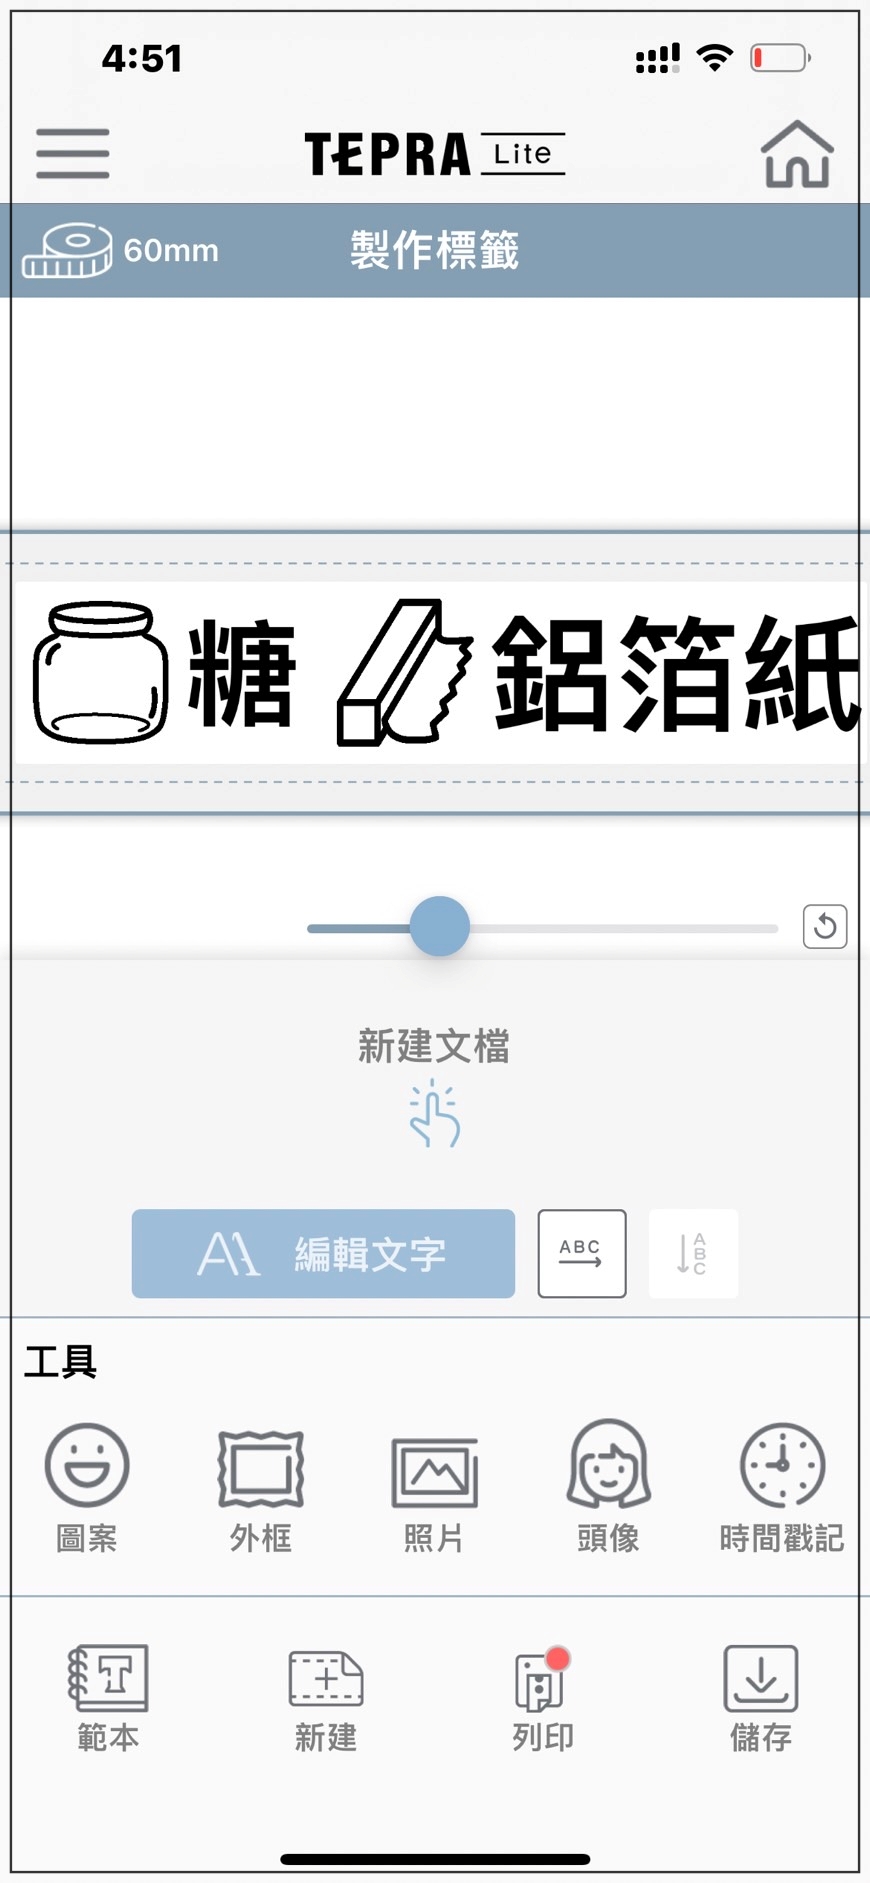 日本KIMG JIM TEPRA Lite 熱感應標籤機 廚房用品標籤